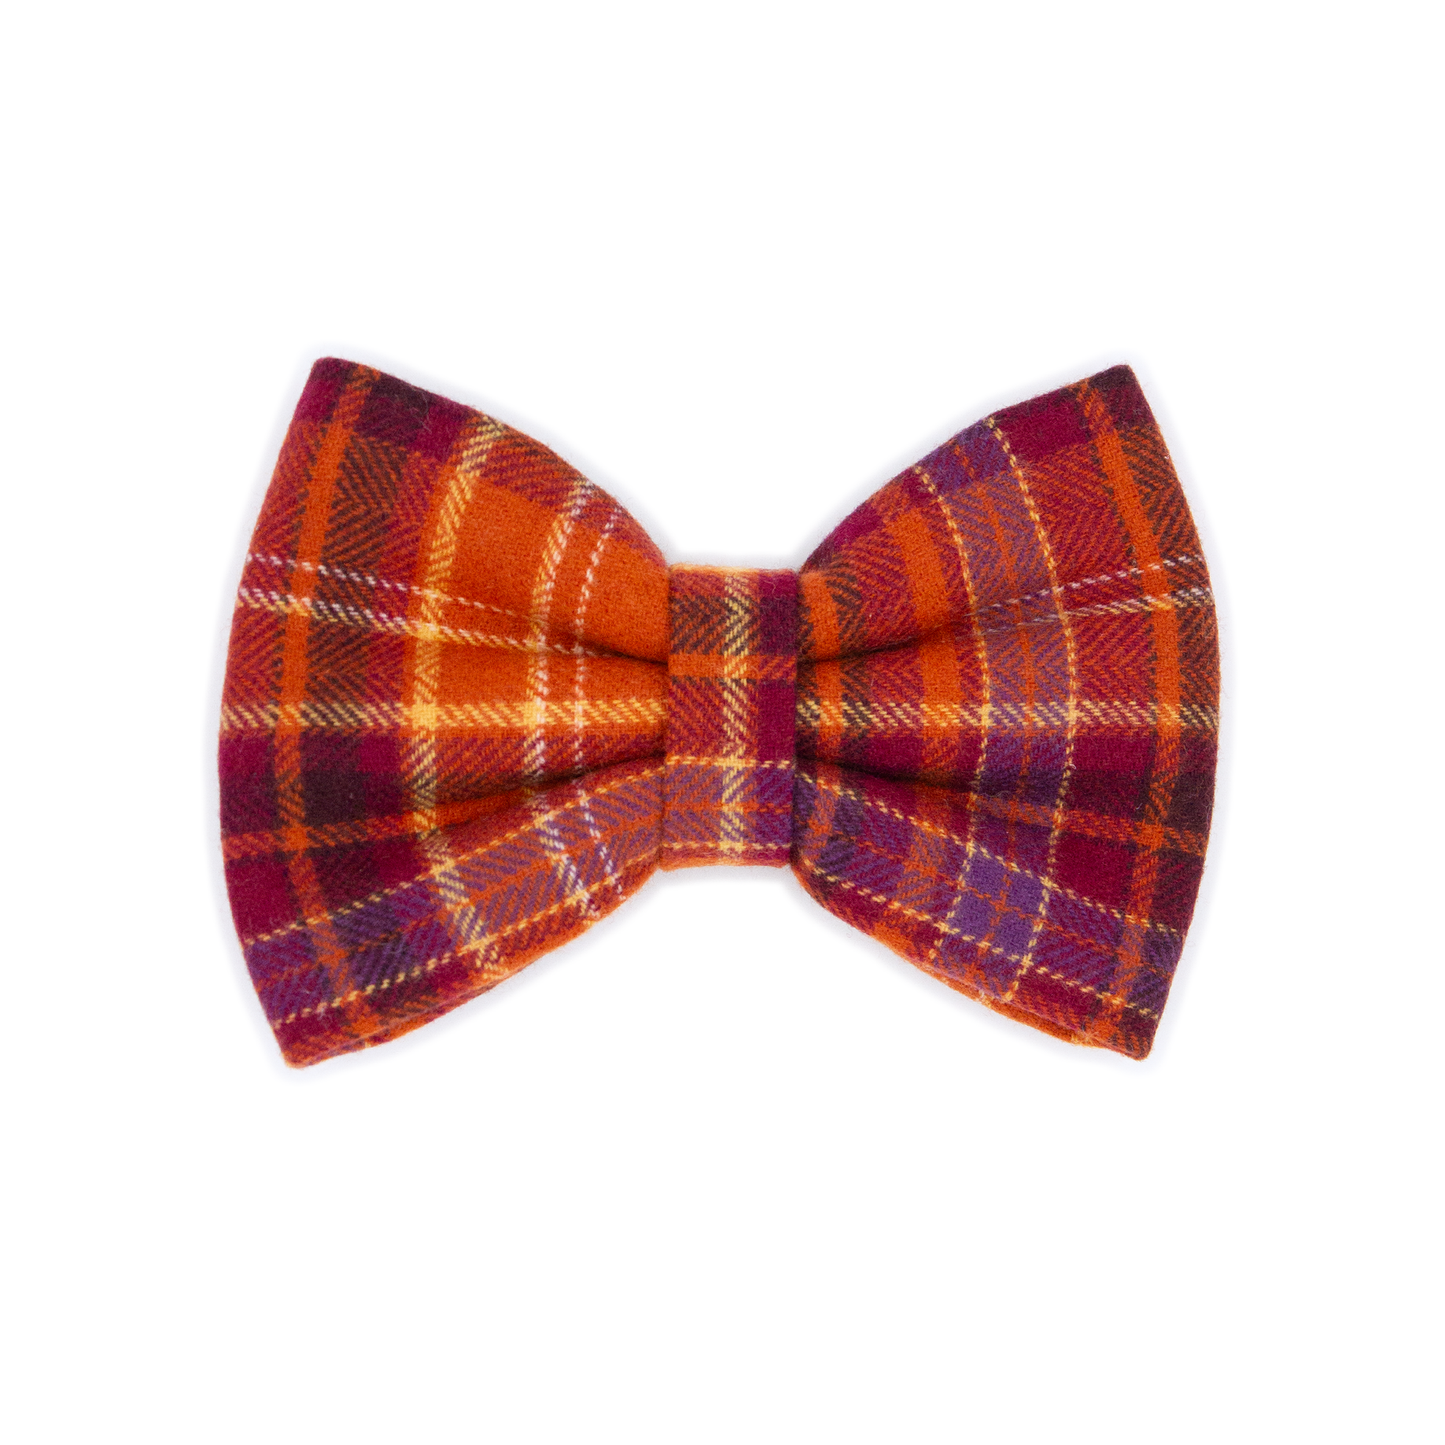 Copper Flannel Bow Tie